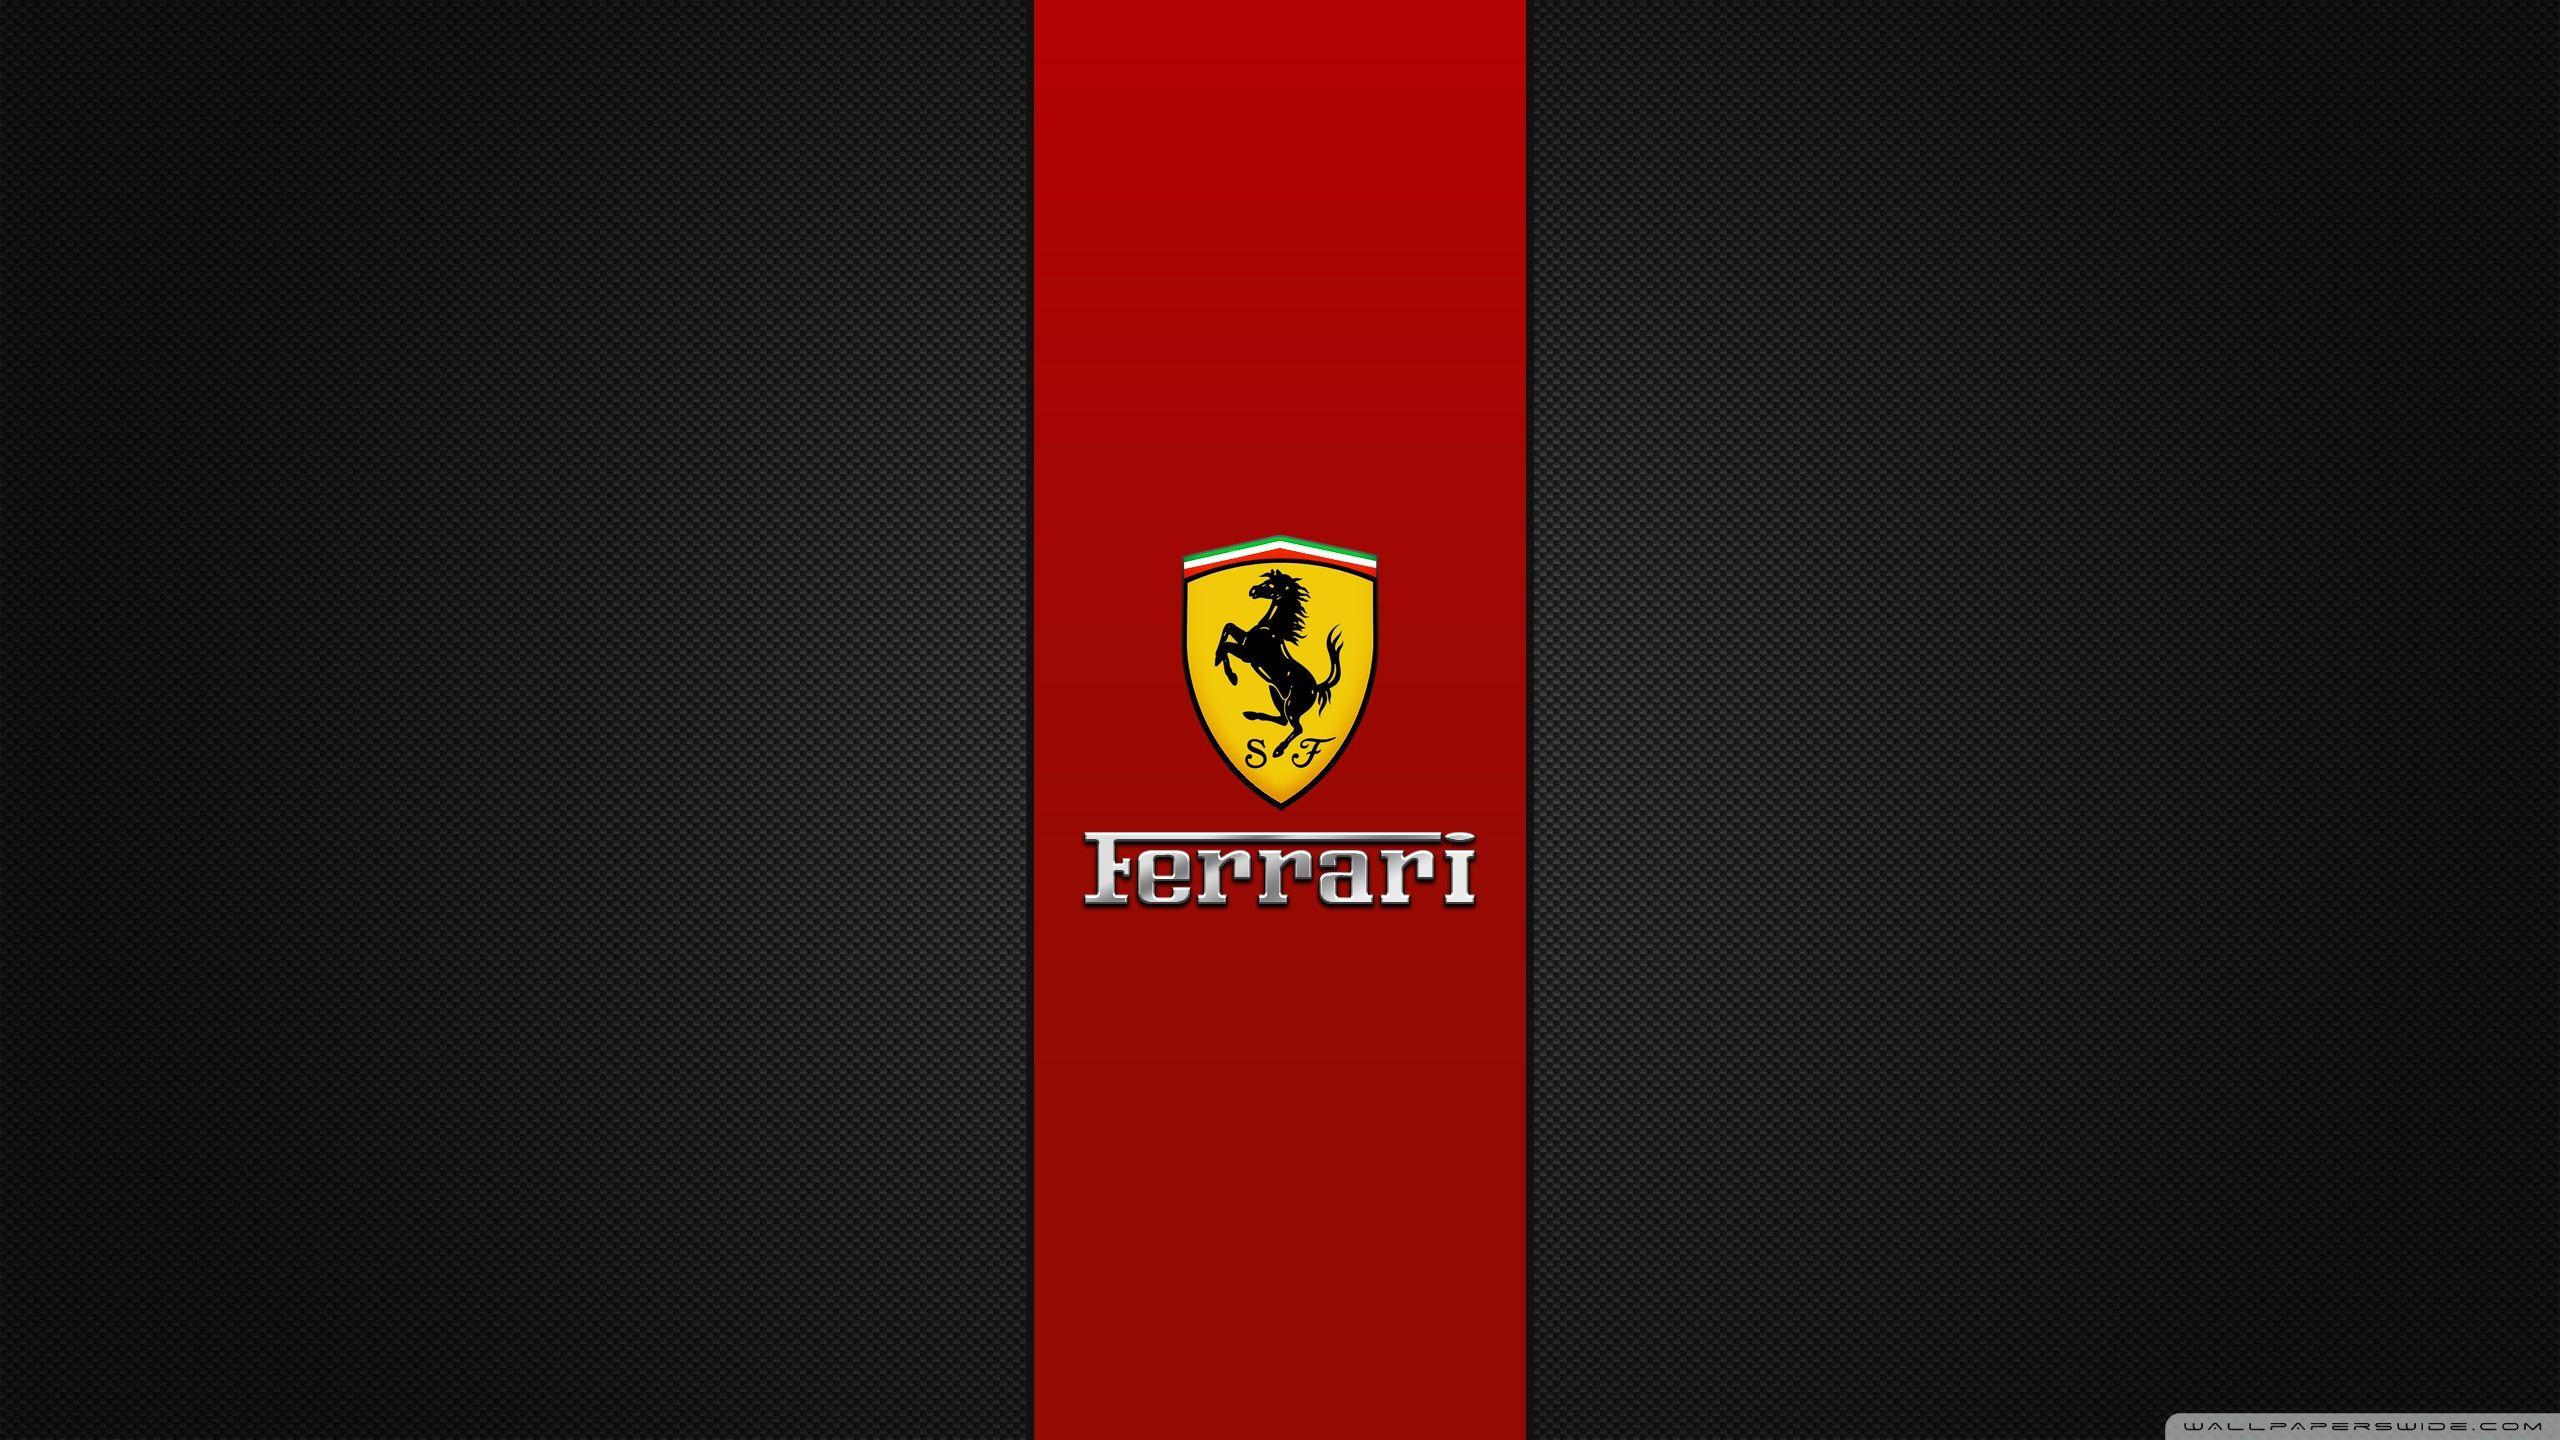 Ferrari ❤ K 2K Desk 4K Wallpapers for • Dual Monitor Desktops